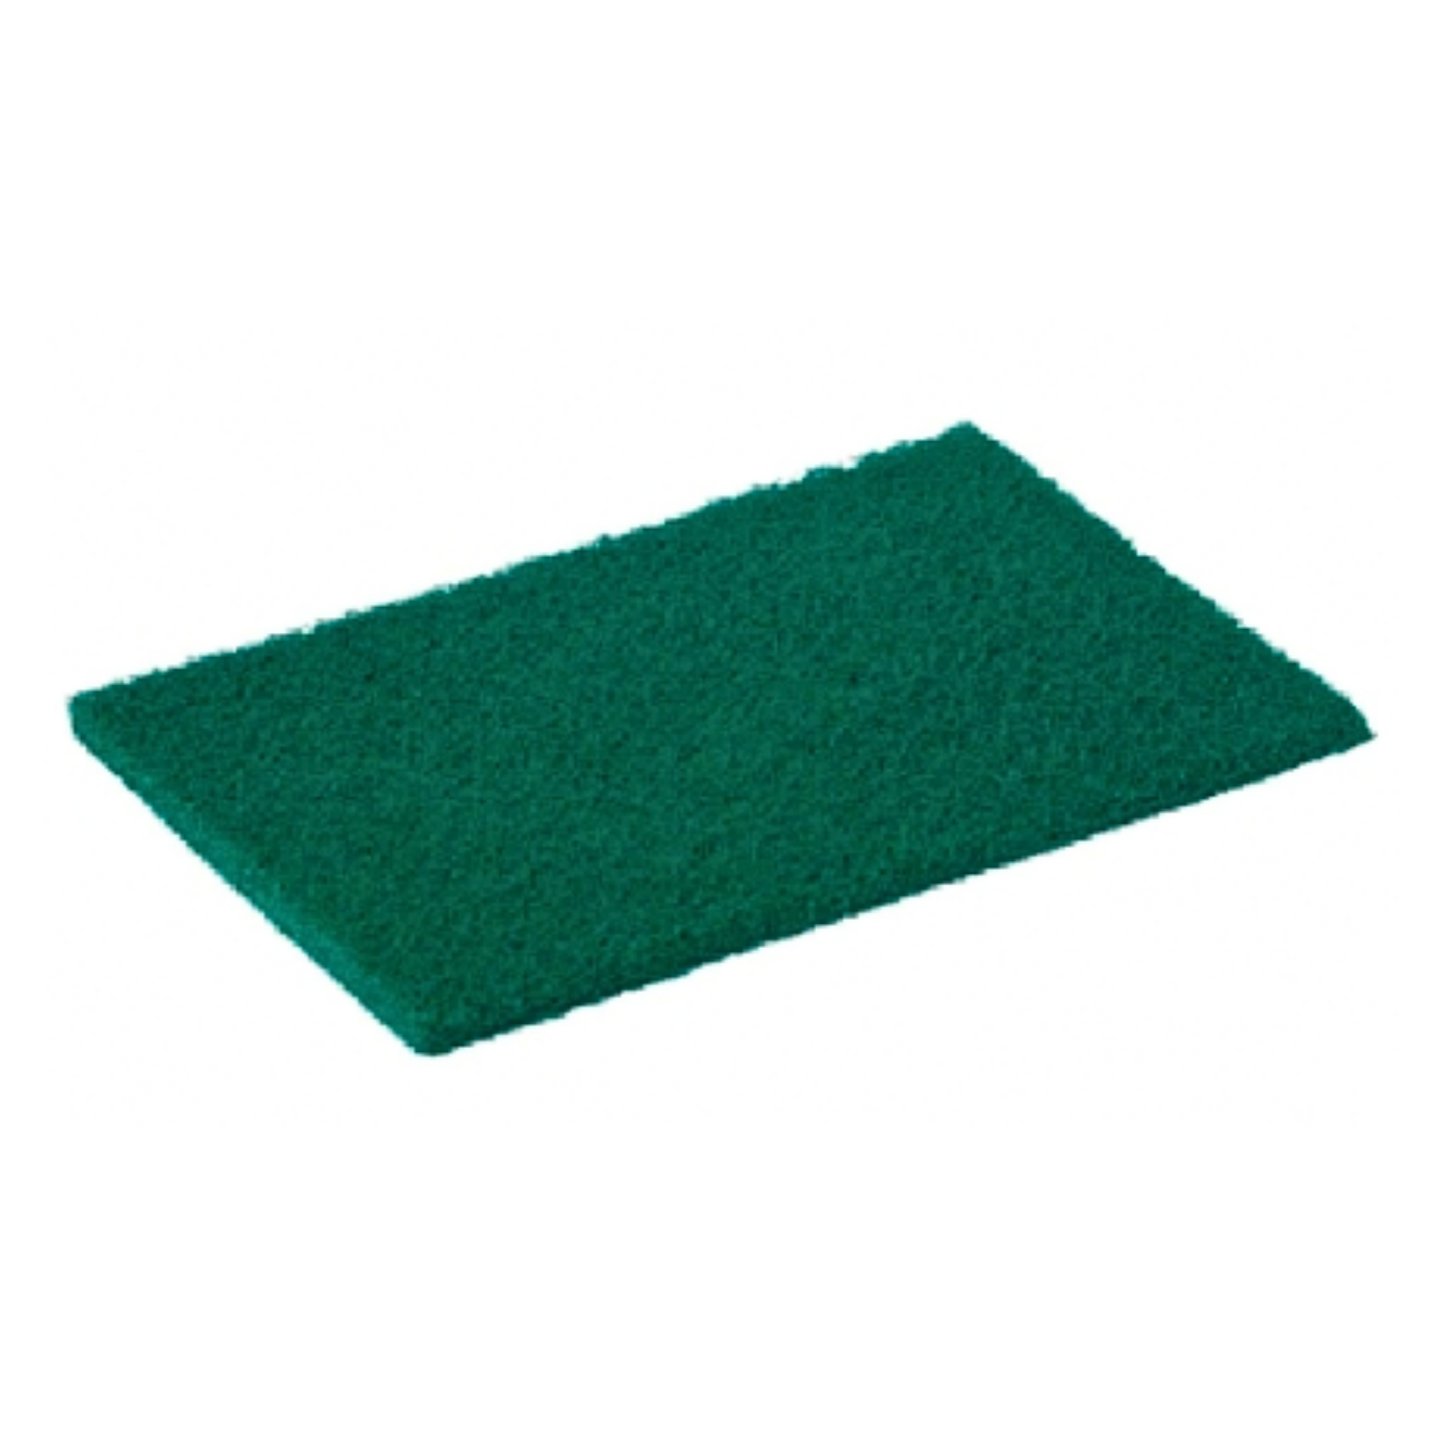 Green Scourer Pad (10 Pack)